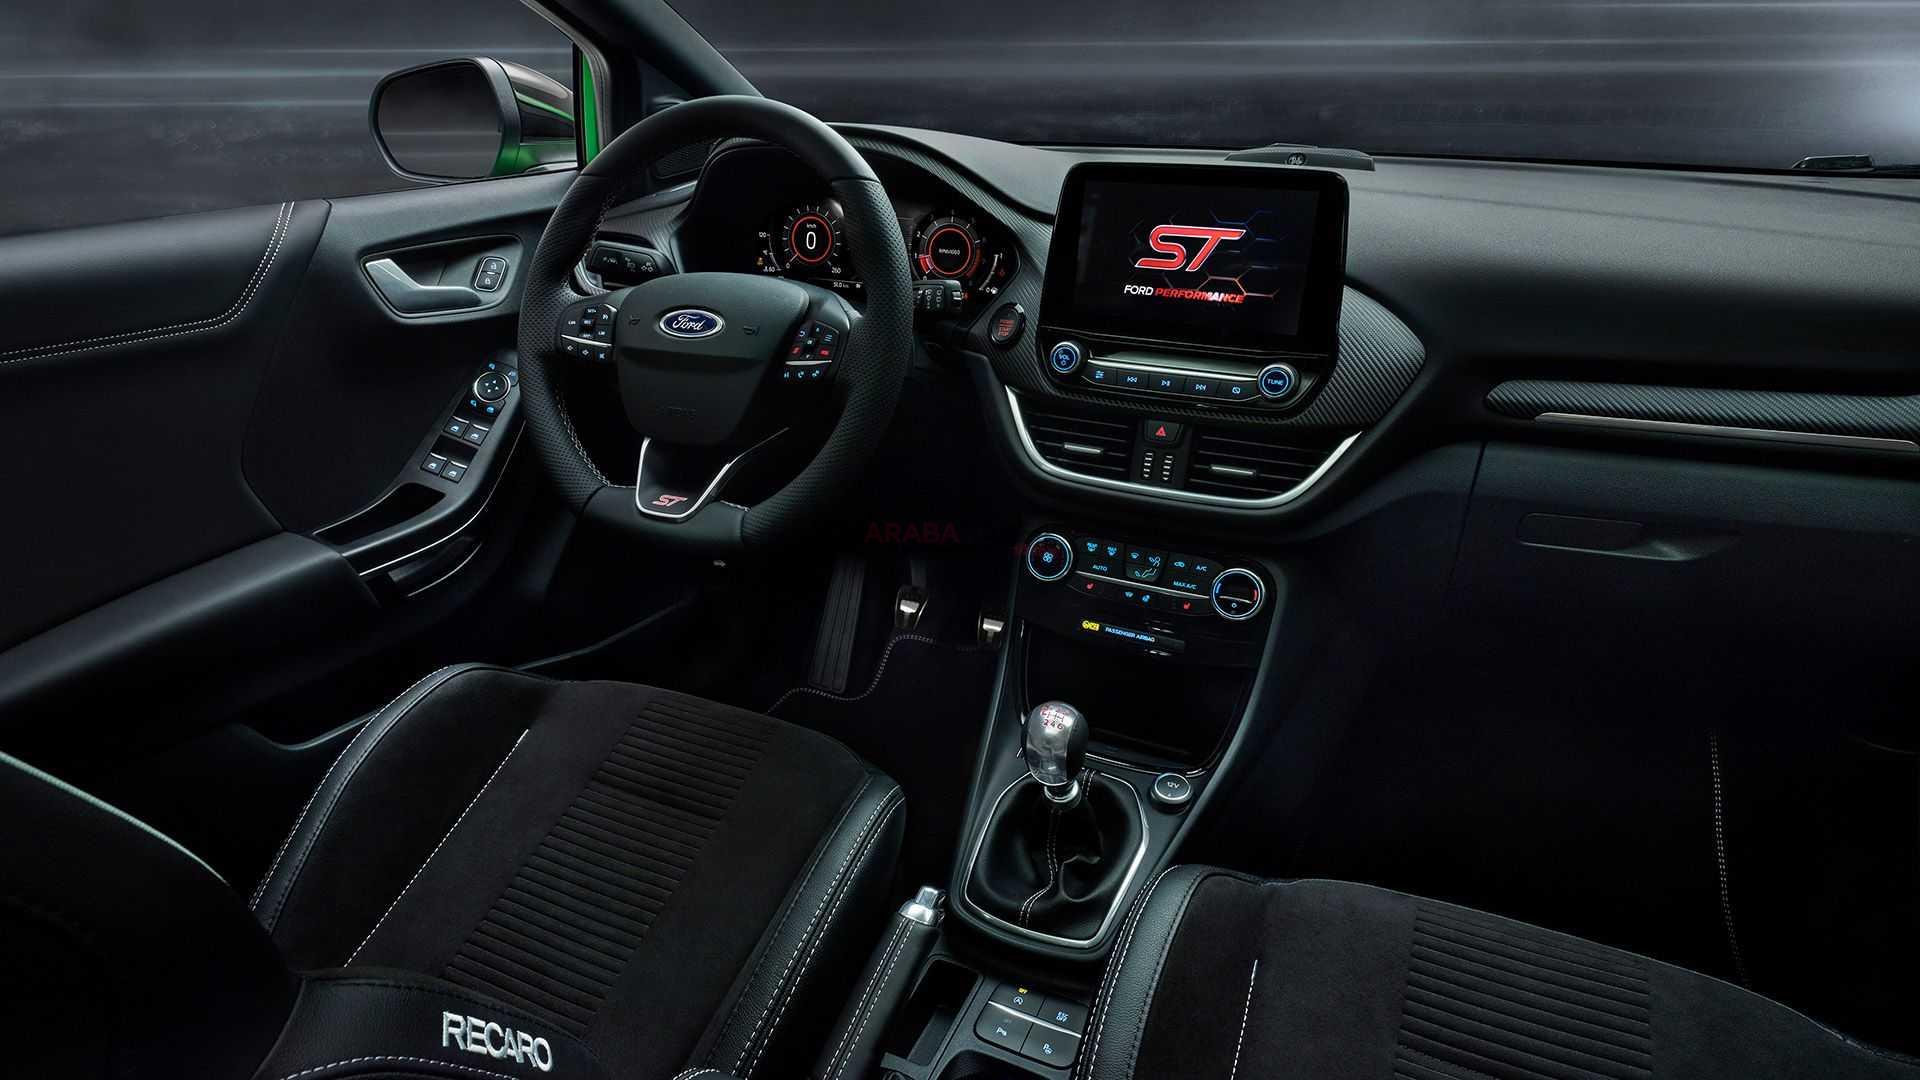 2020 Ford Puma ST, Kardeşi Fiesta ST İle Aynı Motoru Kullanacak